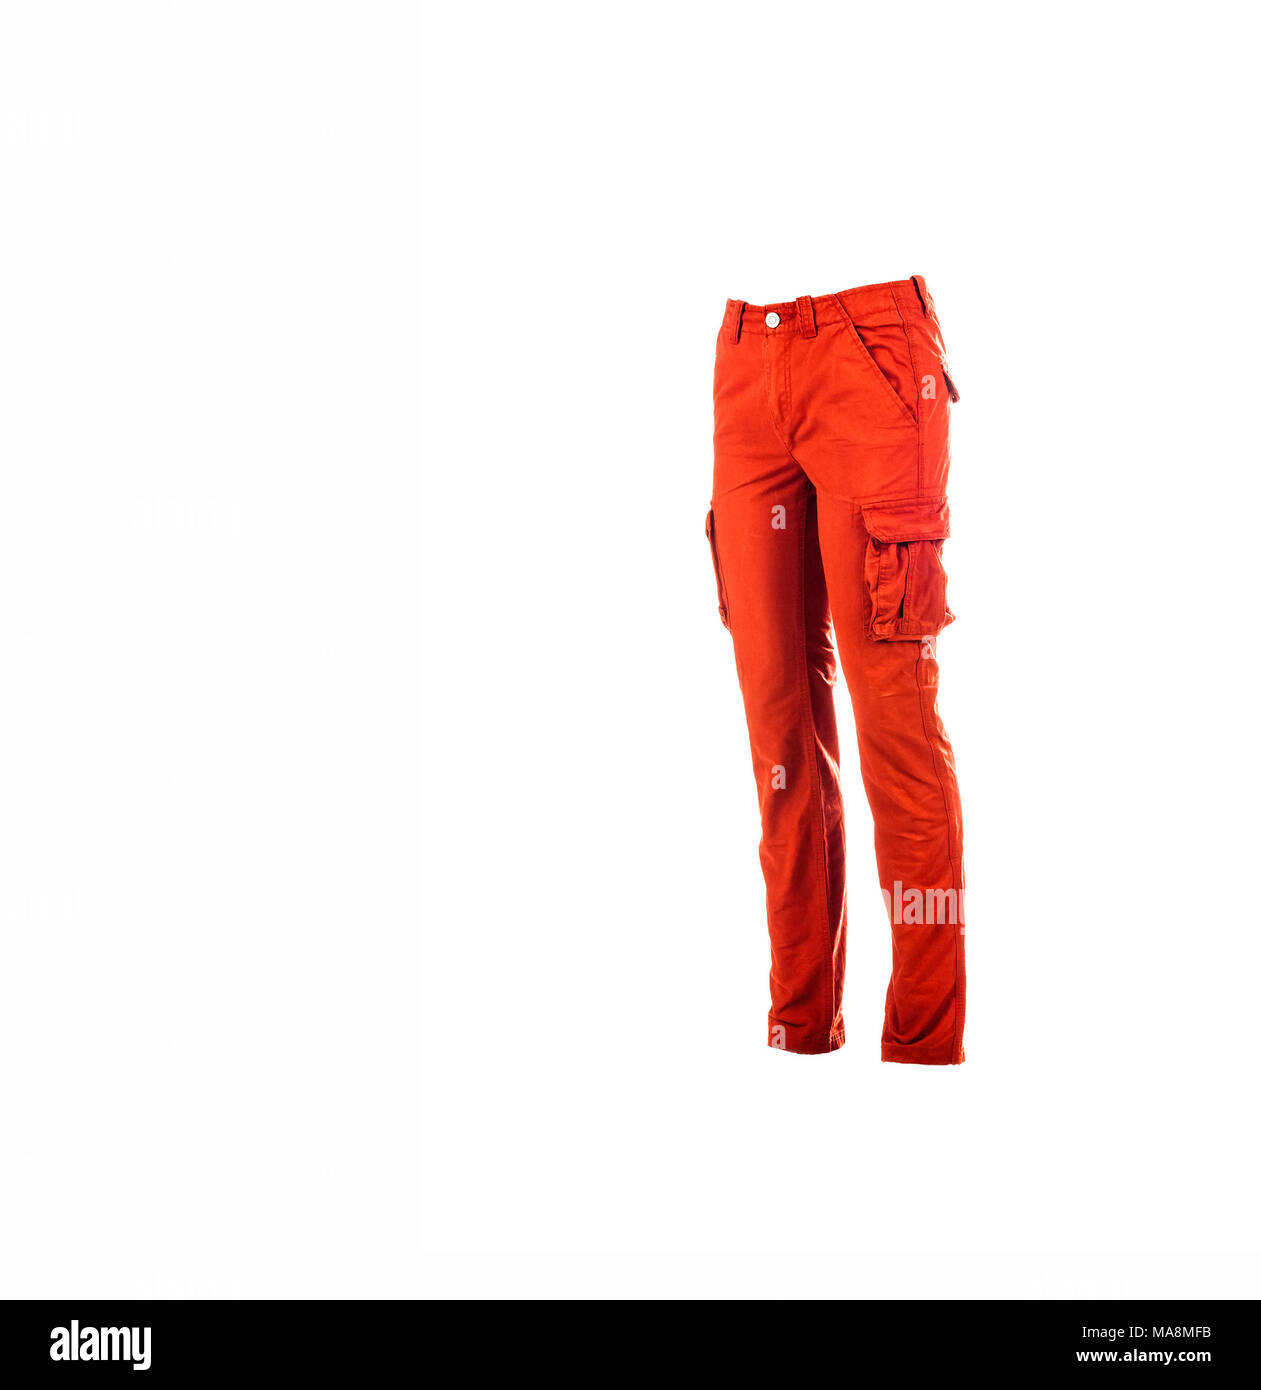 Deportivo rojo pantalones con bolsillos laterales en los muslos de los pantalones, aislado en Foto de estudio, el espacio Fotografía de stock - Alamy